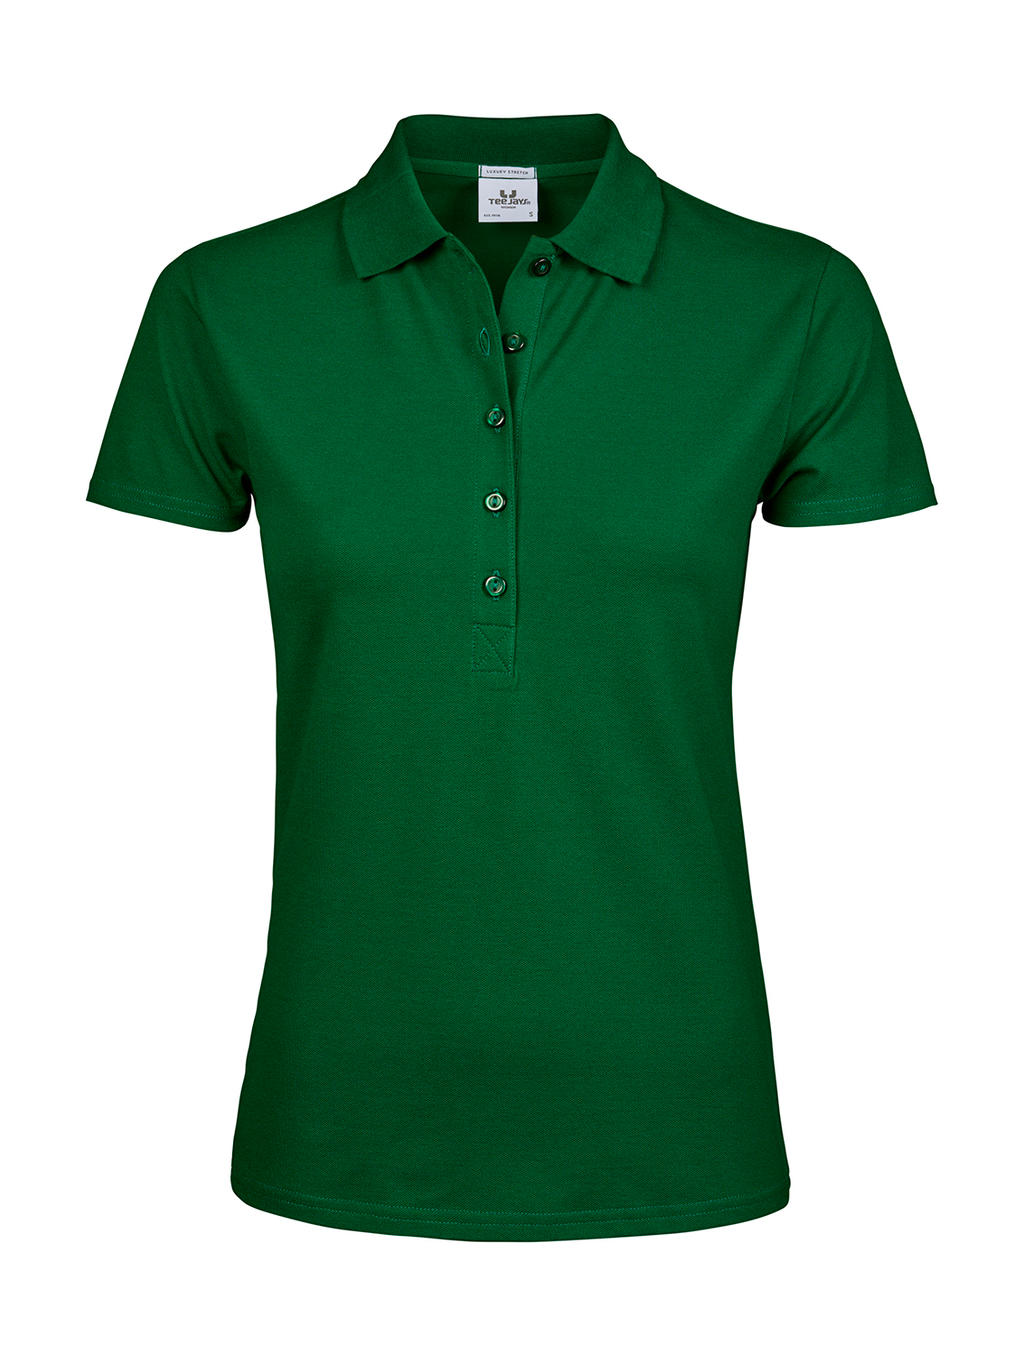 Polokošile dámská Tee Jays Luxury Stretch - zelená, 3XL